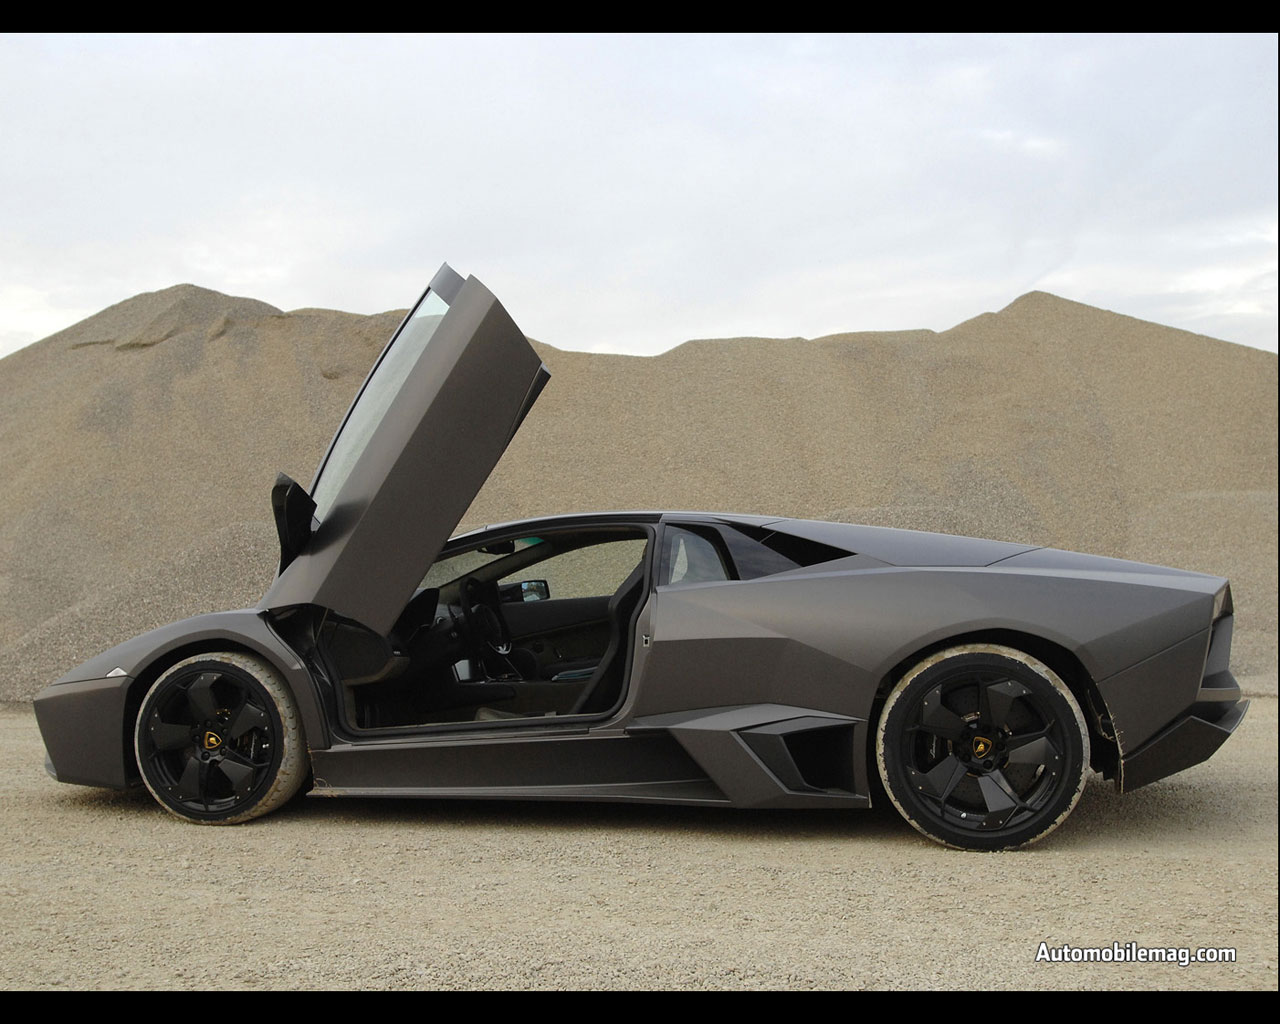 Black Lamborghini Reventon Wallpaper Hd Wallpapers in Cars